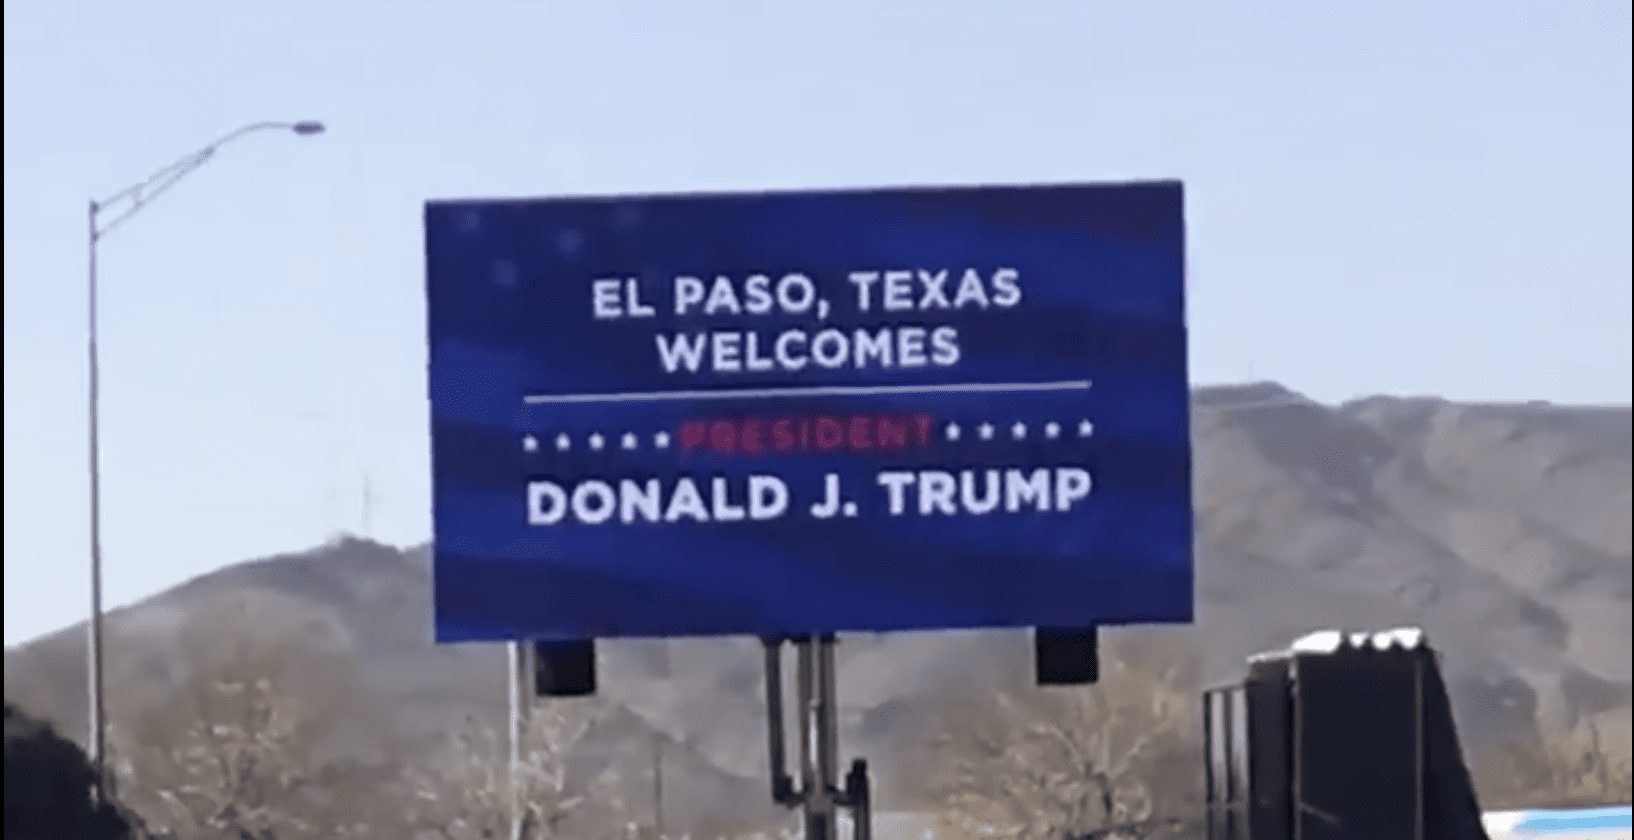 el-paso-texas-welcomes-donald-trump.png